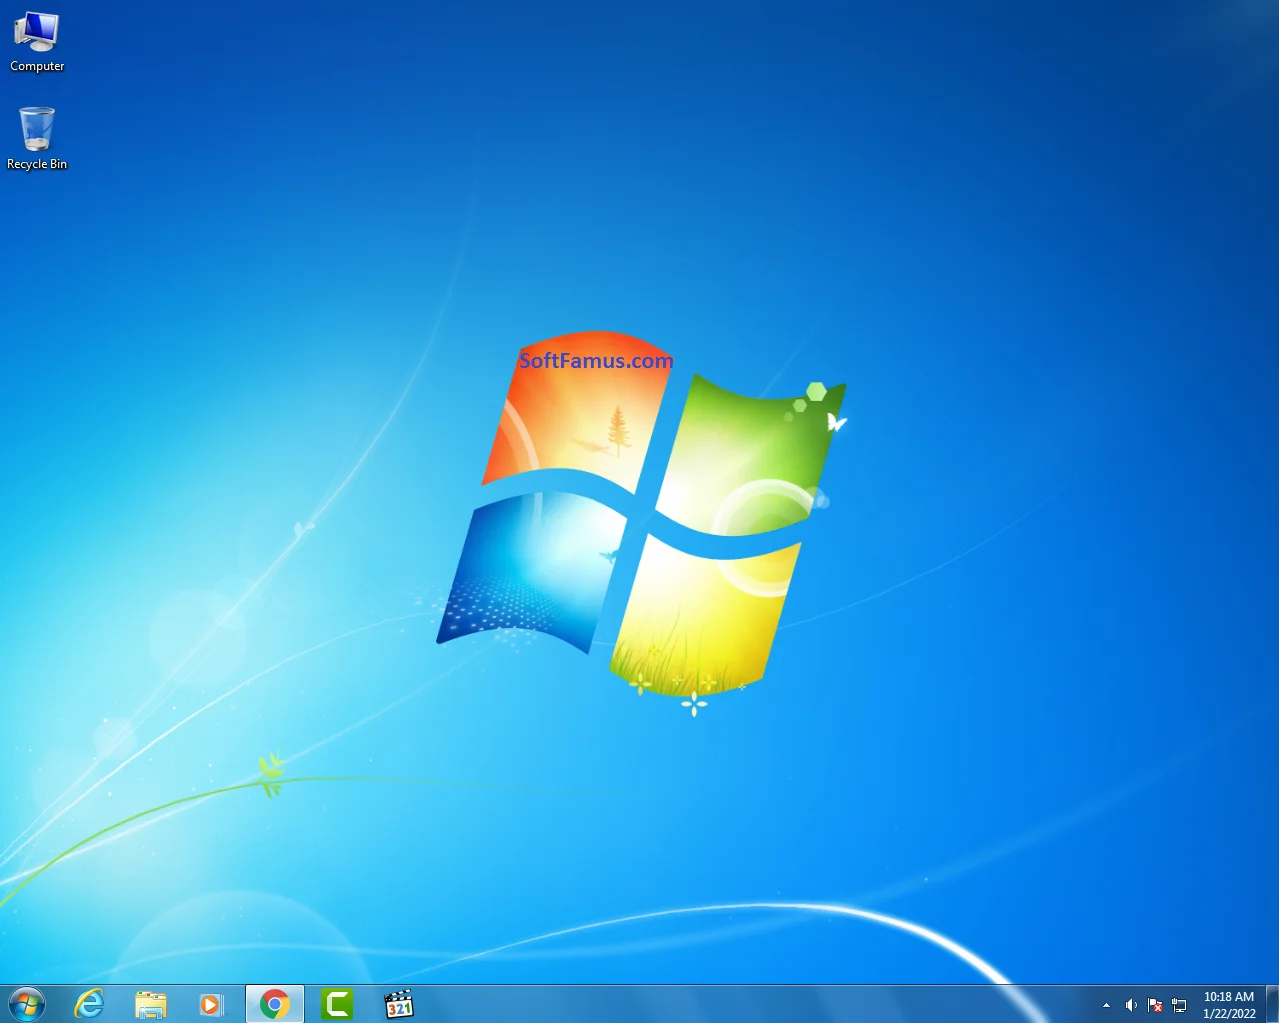 Windows 7 Ultimate ISO